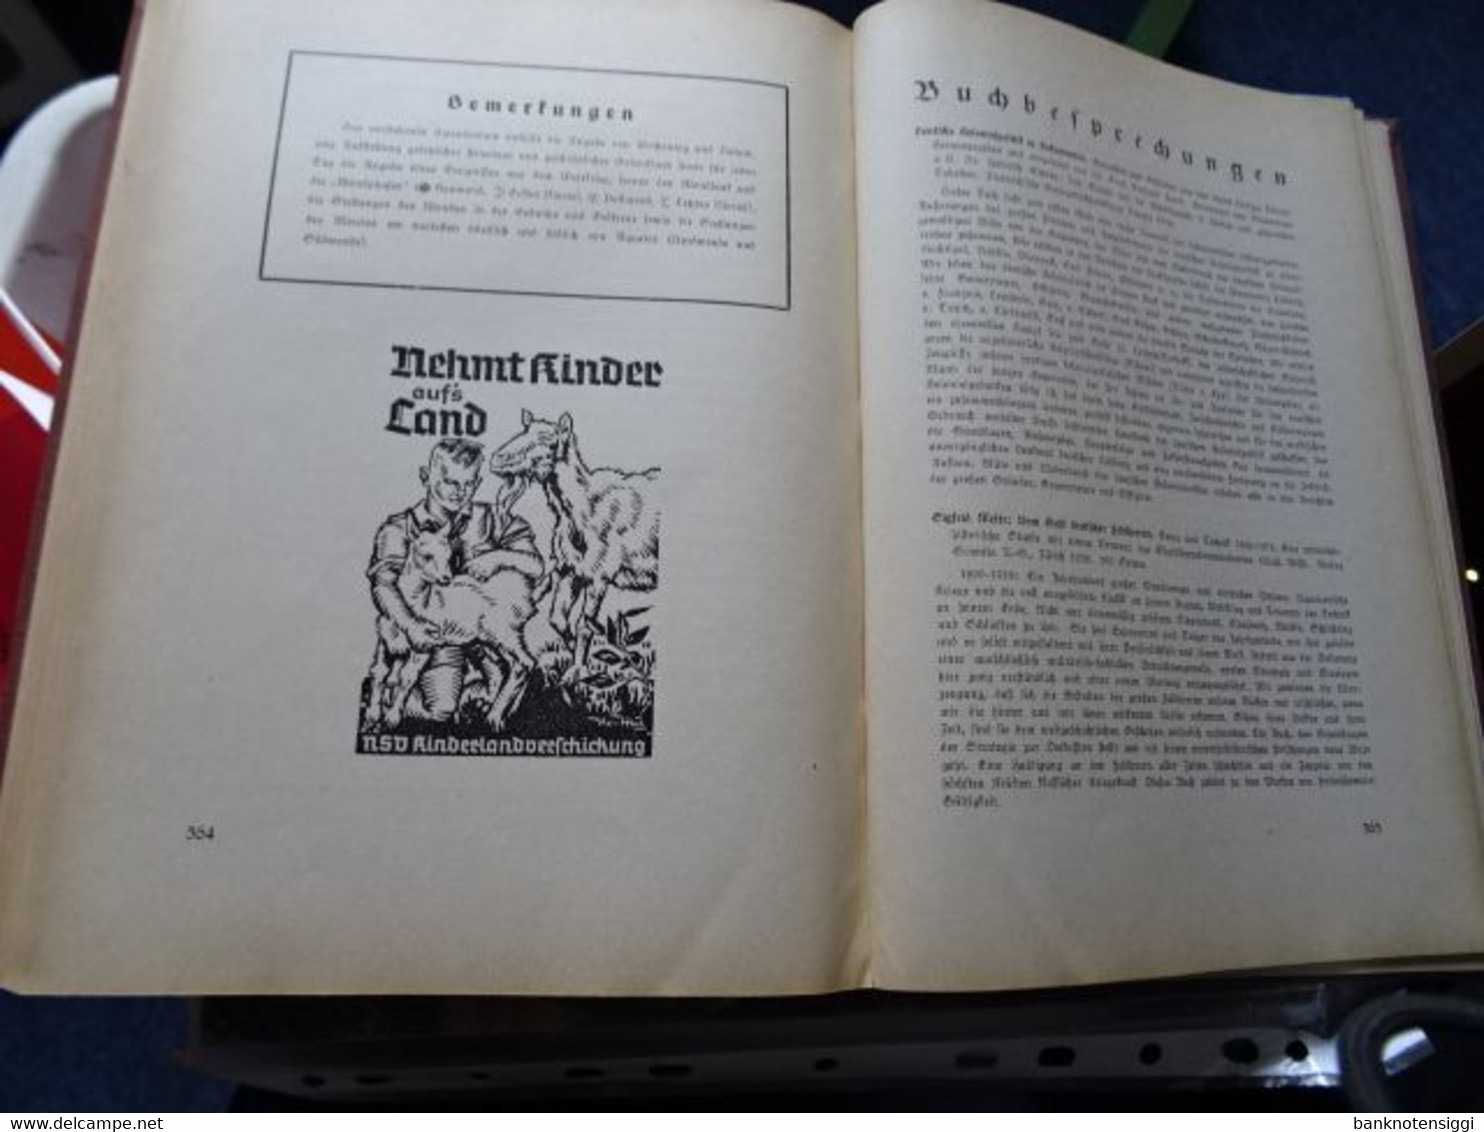 Aufbau und Wehr"Deutsche Wille" Jahrbuch 1939